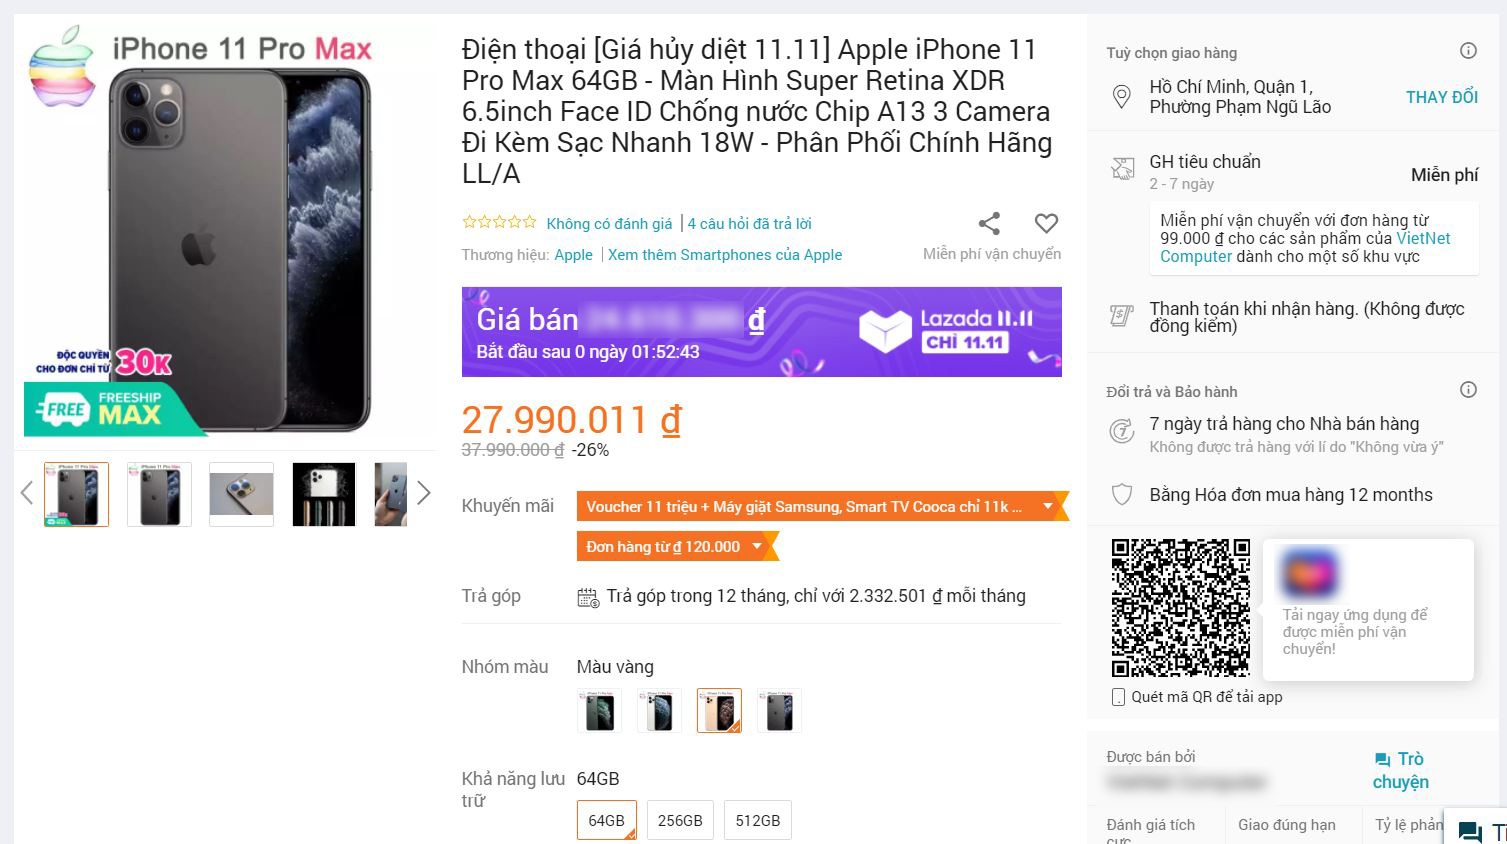 iPhone, tai nghe giảm giá hơn 10 triệu đồng là trò lừa đảo ngày sale 11/11 - 1